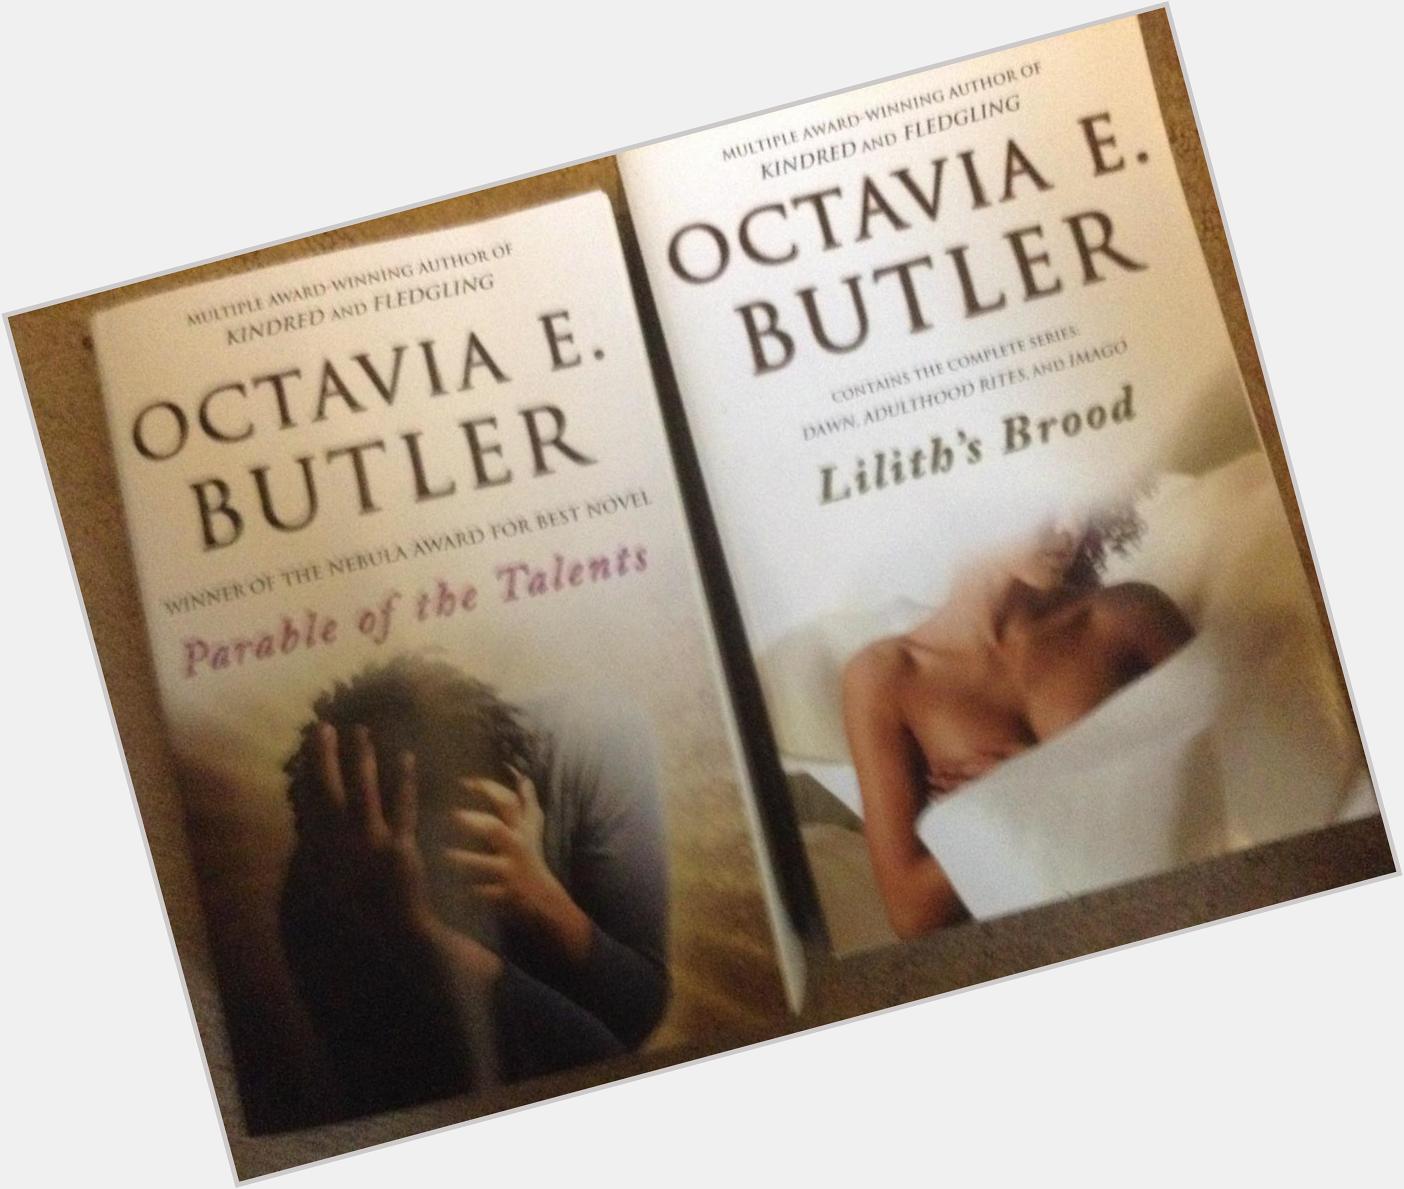 Happy birthday to Octavia E. Butler... 1/2 